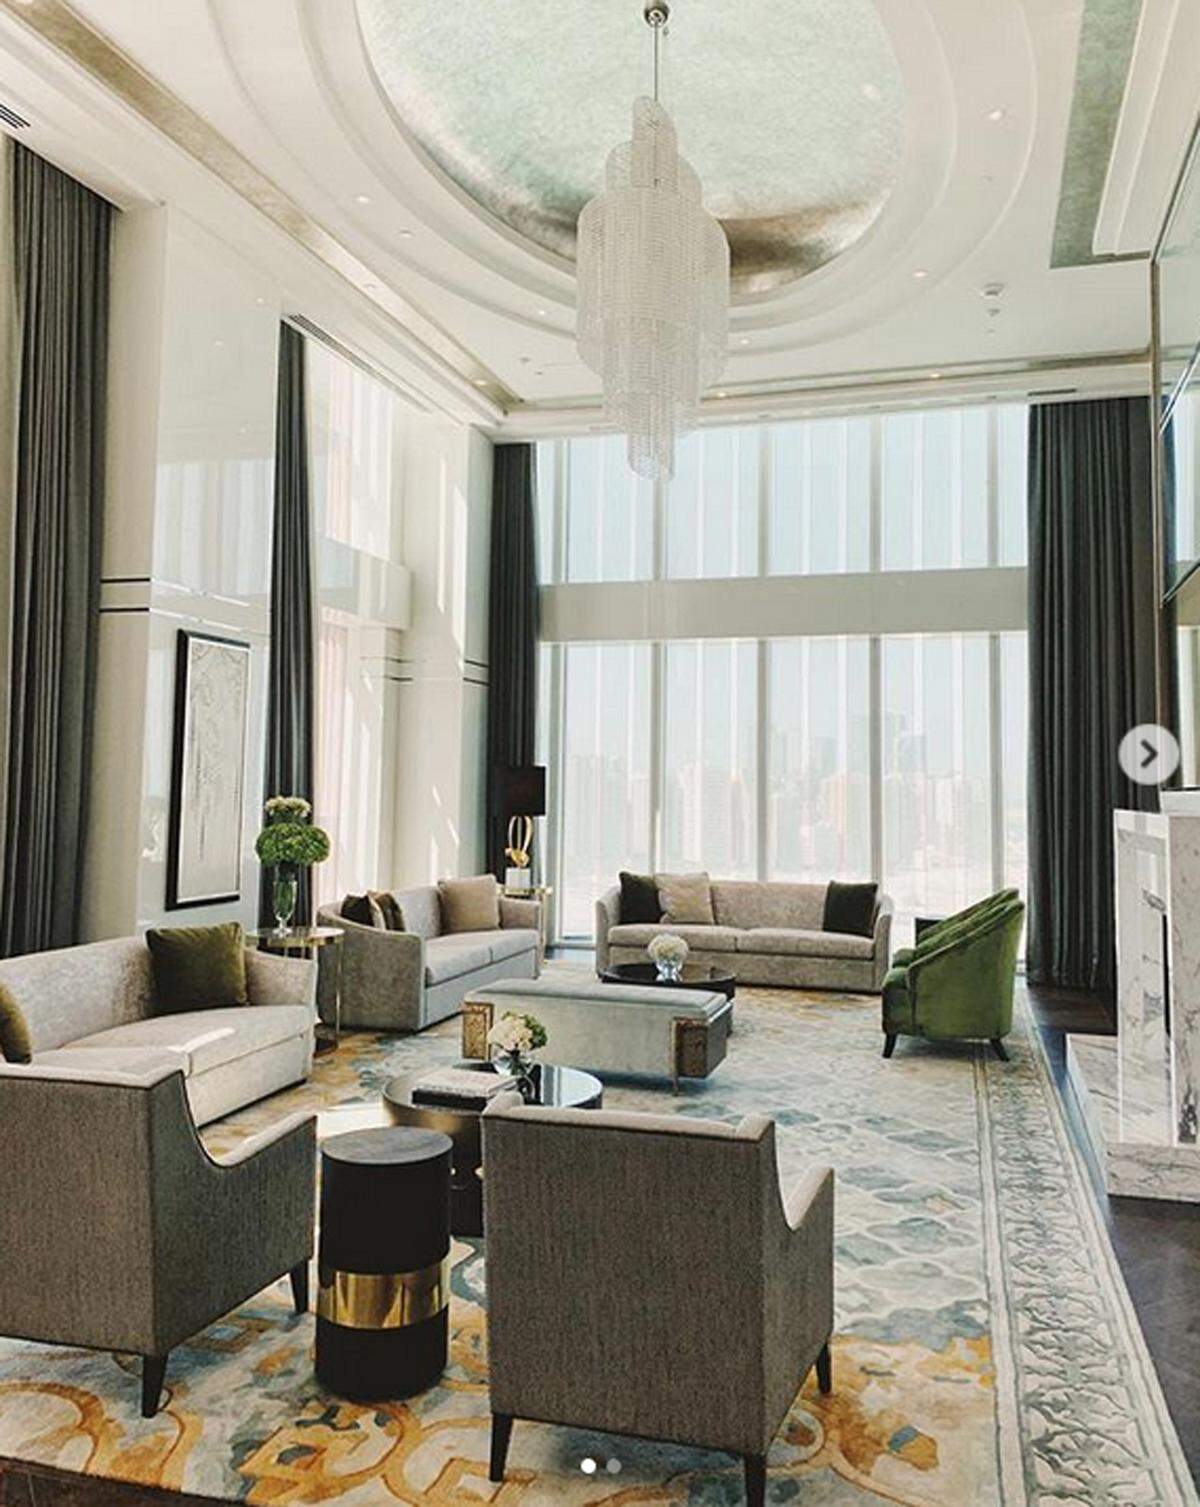 Das urbane zeitgemäße Hotel besticht optisch durch glänzend weiße Marmor- und Perlmuttakzente, die auf die Perlentaucher-Geschichte der Vereinigten Arabischen Emirate zurückgehen. Darüber hinaus befinden sich über 2000 Kunstwerke im Hotel.